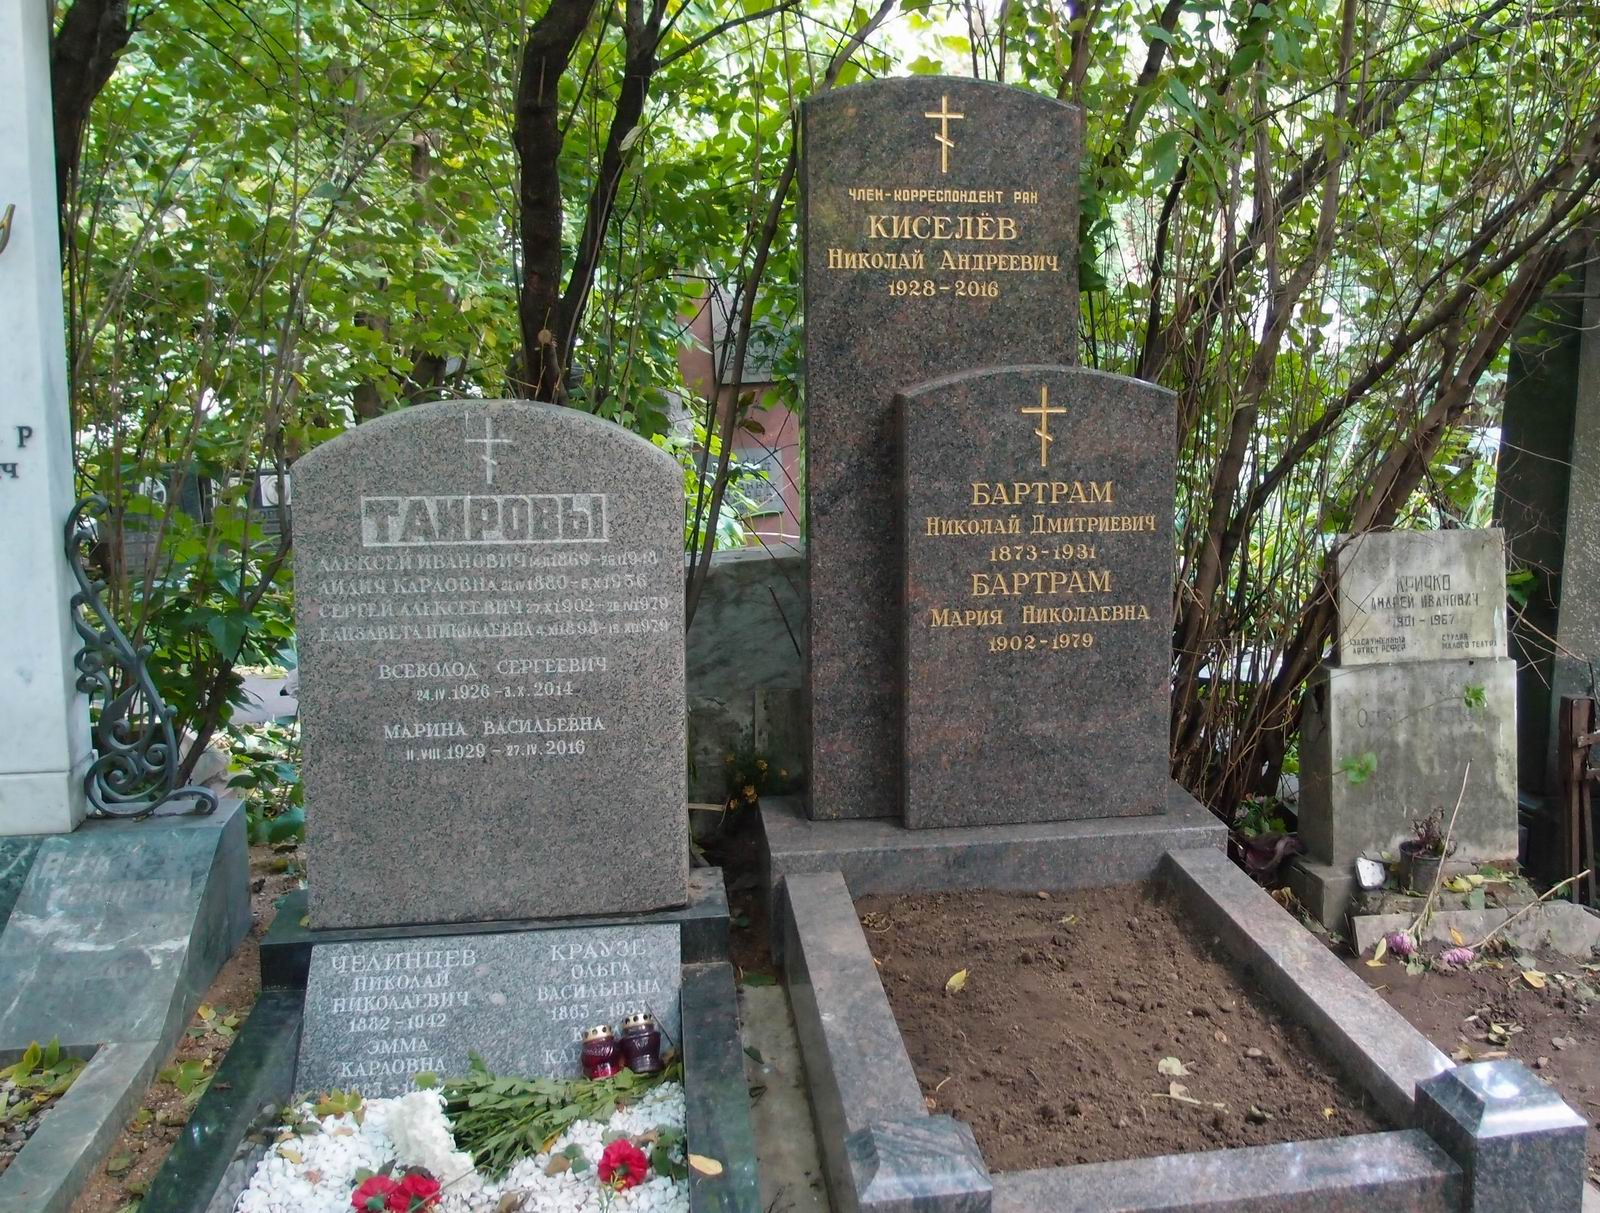 Памятник на могиле Бартрама Н.Д. (1873–1931) и Киселёва Н.А. (1928–2016), на Новодевичьем кладбище (2–7–20). Нажмите левую кнопку мыши, чтобы увидеть вариант памятника до 2016.